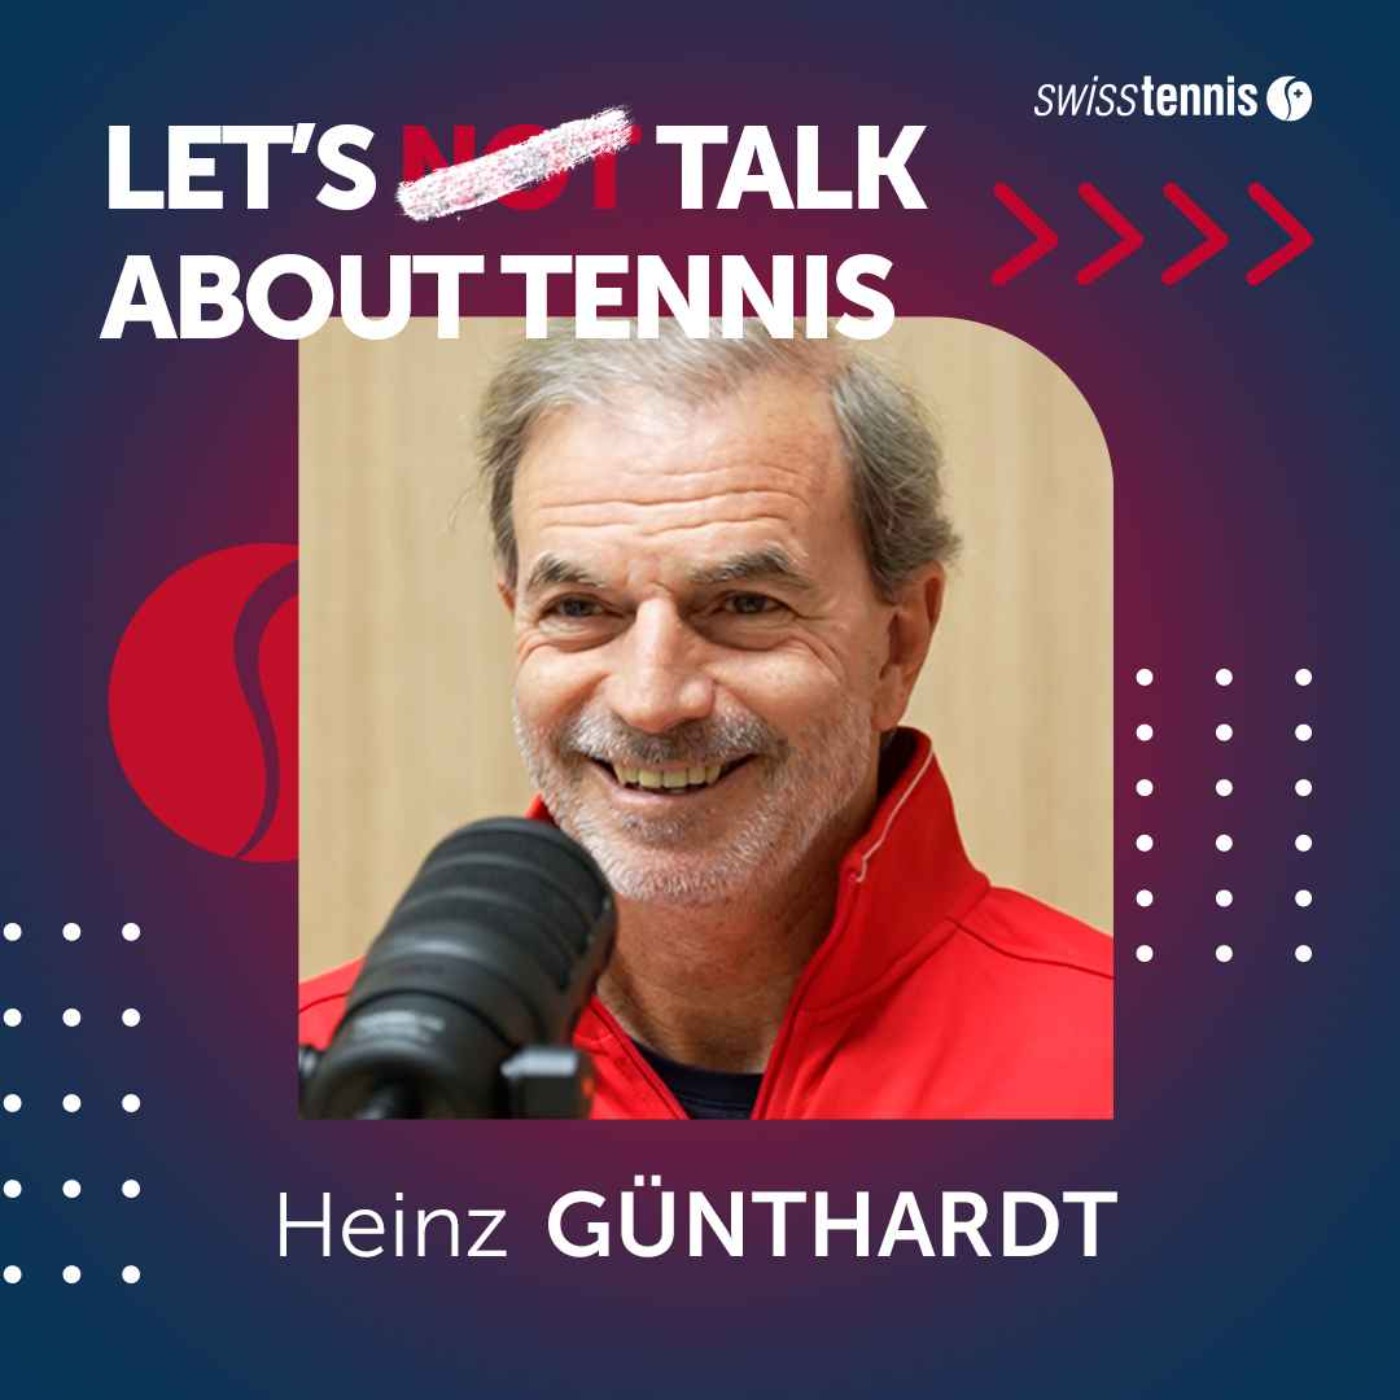 Heinz Günthardt: "Es wird dort gespielt, wo es das meiste Geld gibt"